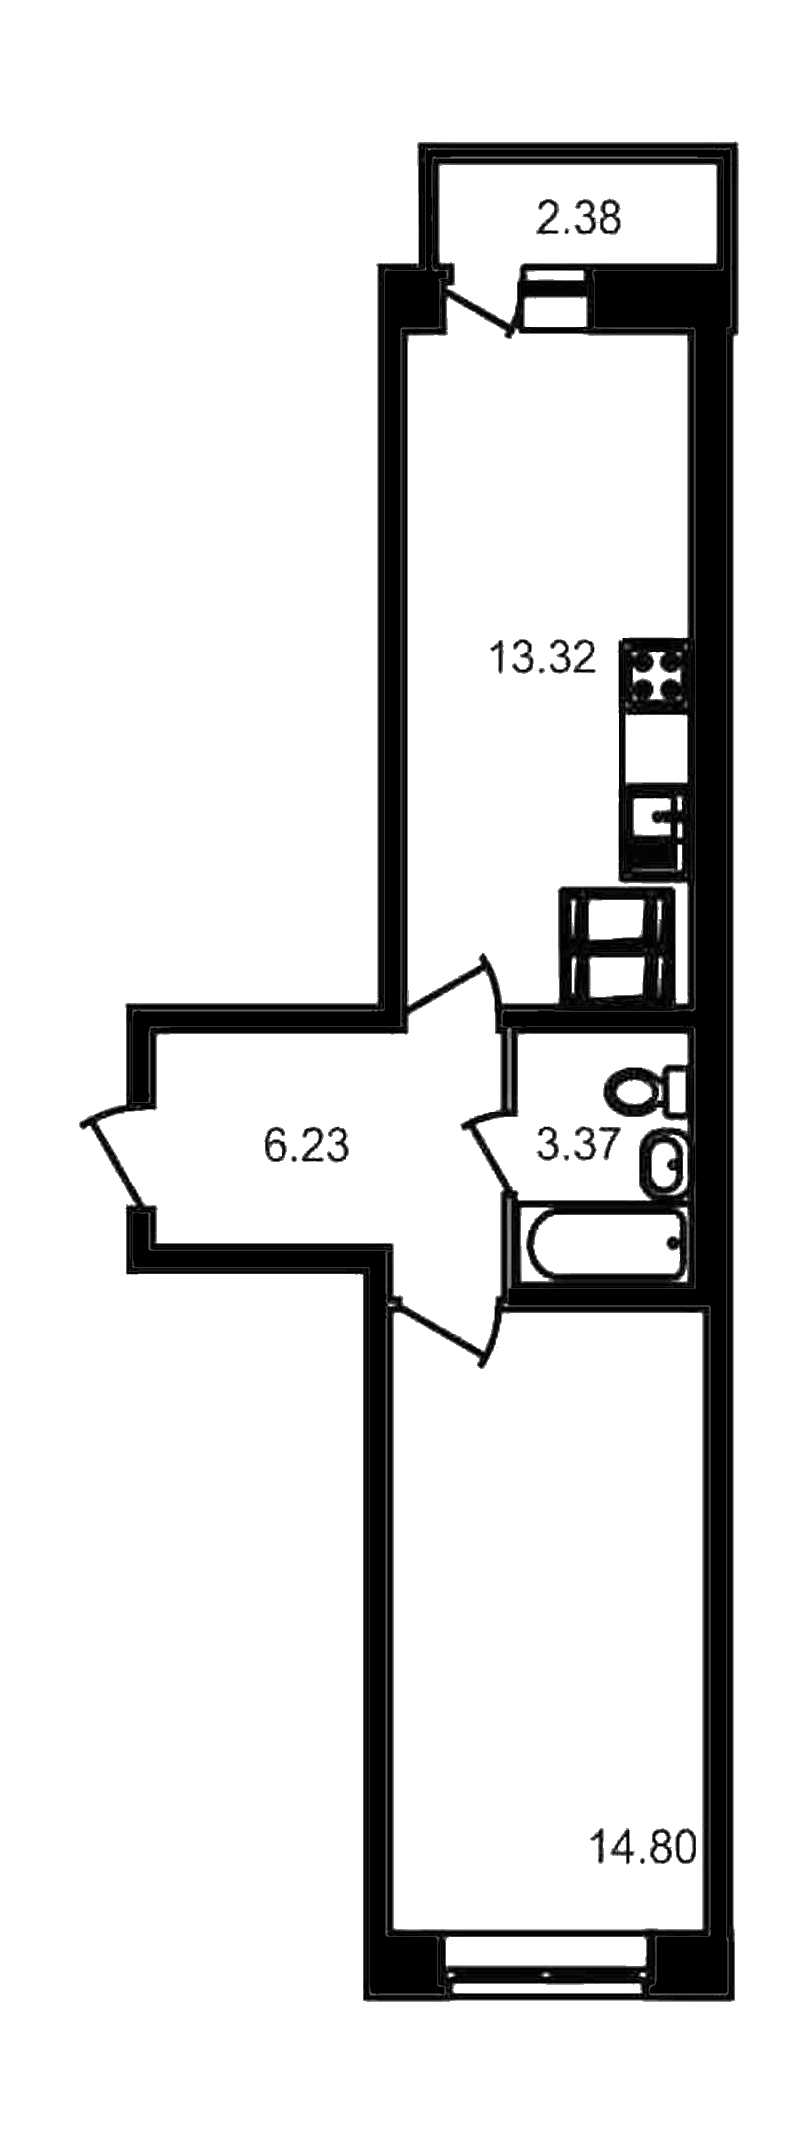 Однокомнатная квартира в ЦДС: площадь 40.1 м2 , этаж: 18 – купить в Санкт-Петербурге